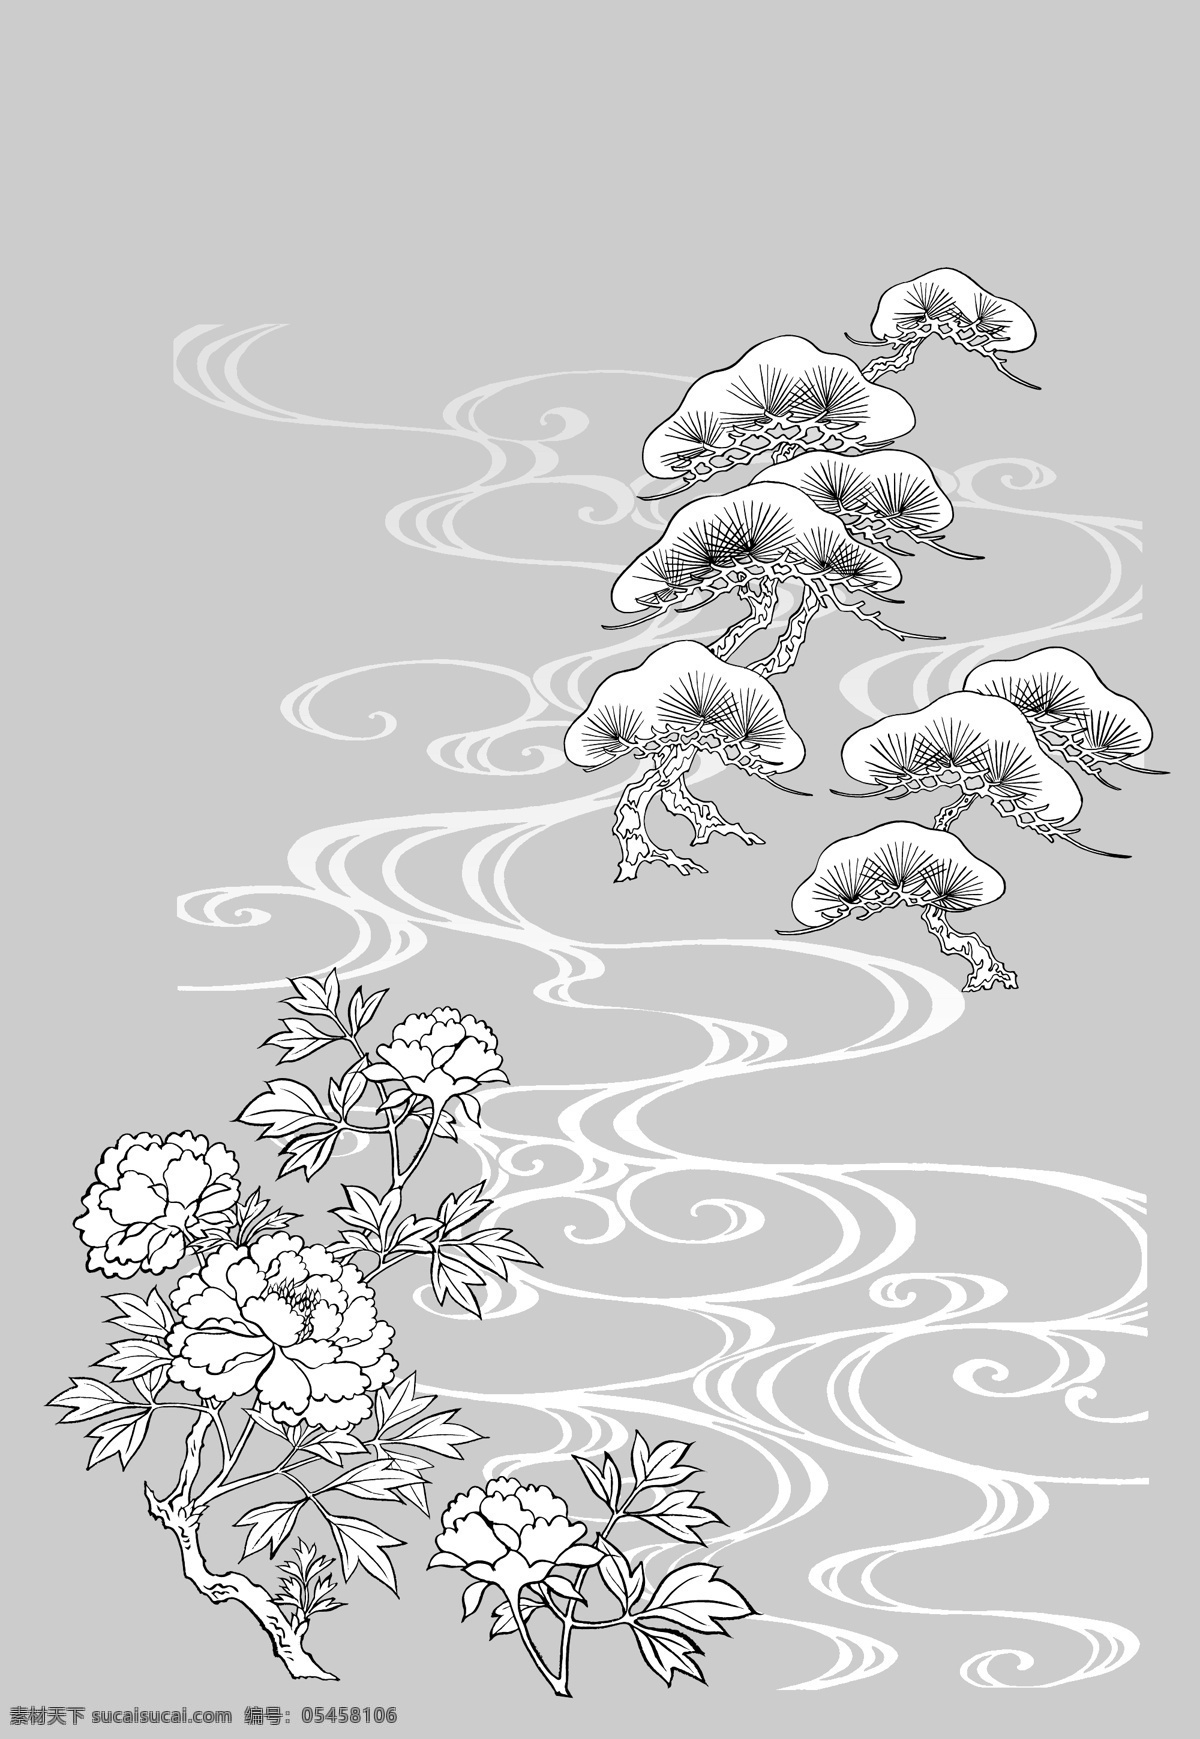 线描 牡丹 图案 来自 日本 民间 原创 十分美观 矢量图 花纹花边